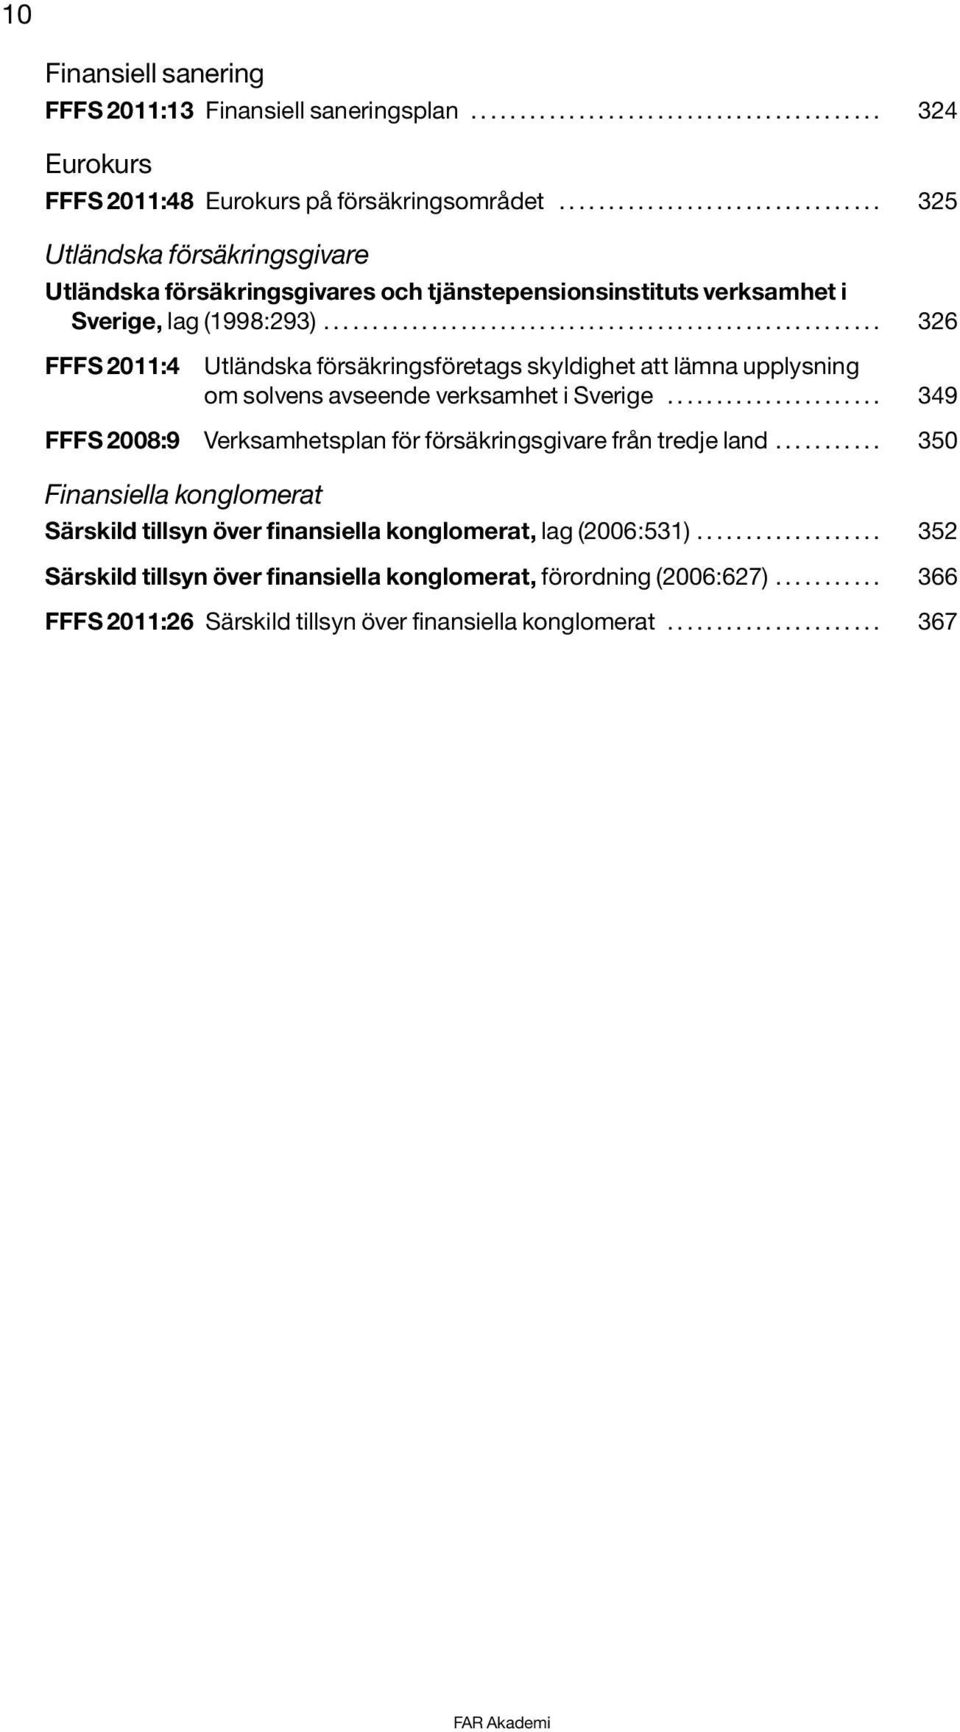 ........................................................ 326 FFFS 2011:4 Utländska försäkringsföretags skyldighet att lämna upplysning om solvens avseende verksamhet i Sverige.